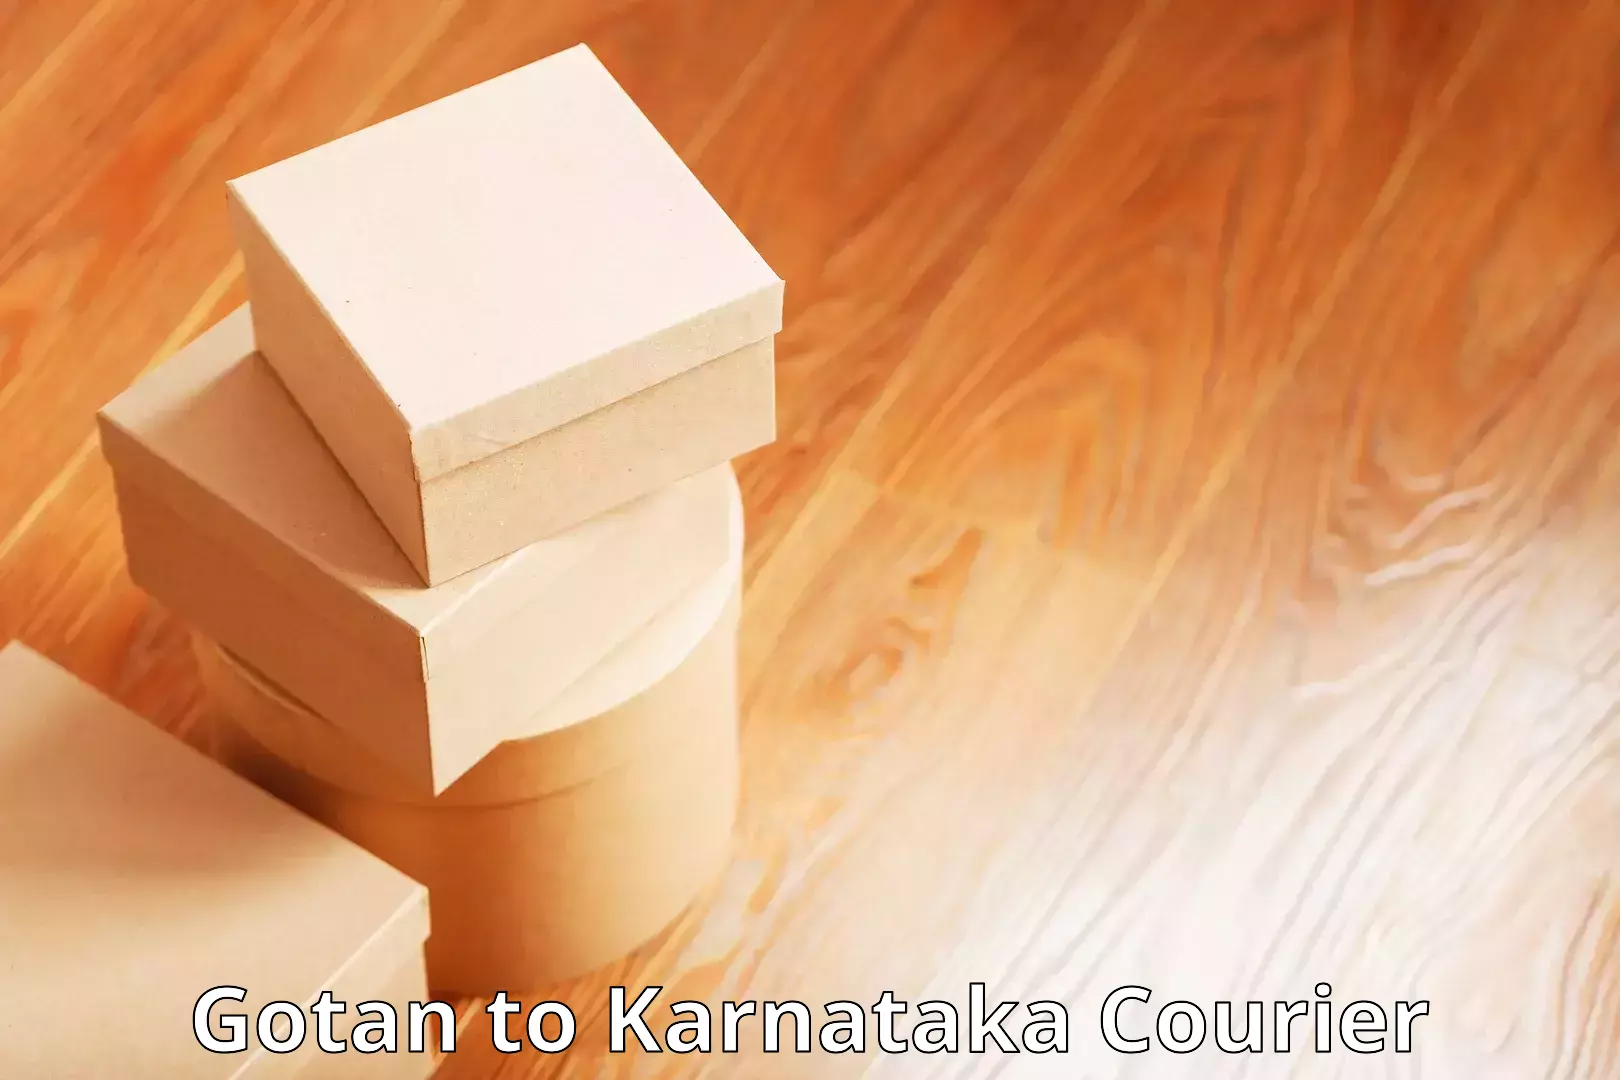 Comprehensive logistics Gotan to Karnataka